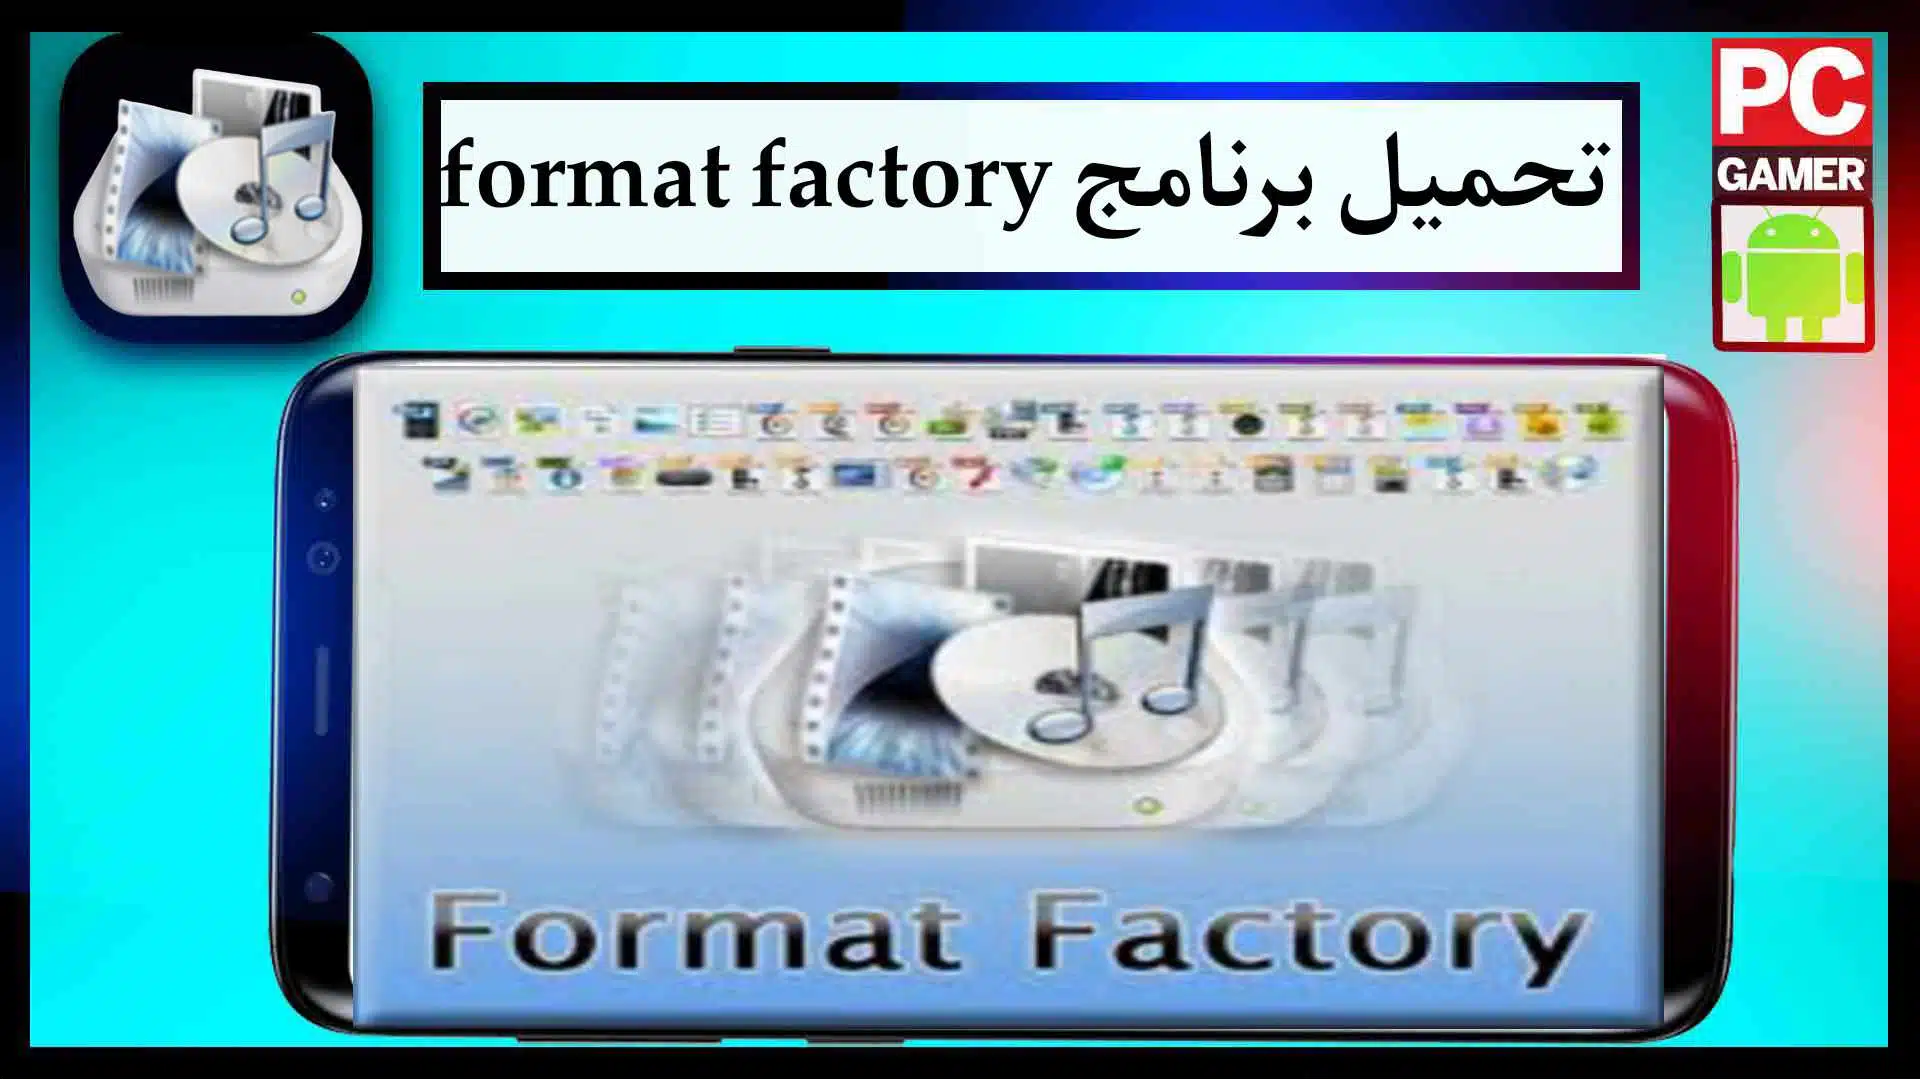 تحميل برنامج فورمات فاكتوري format factory احدث اصدار للموبيل للكمبيوتر مجانا 2